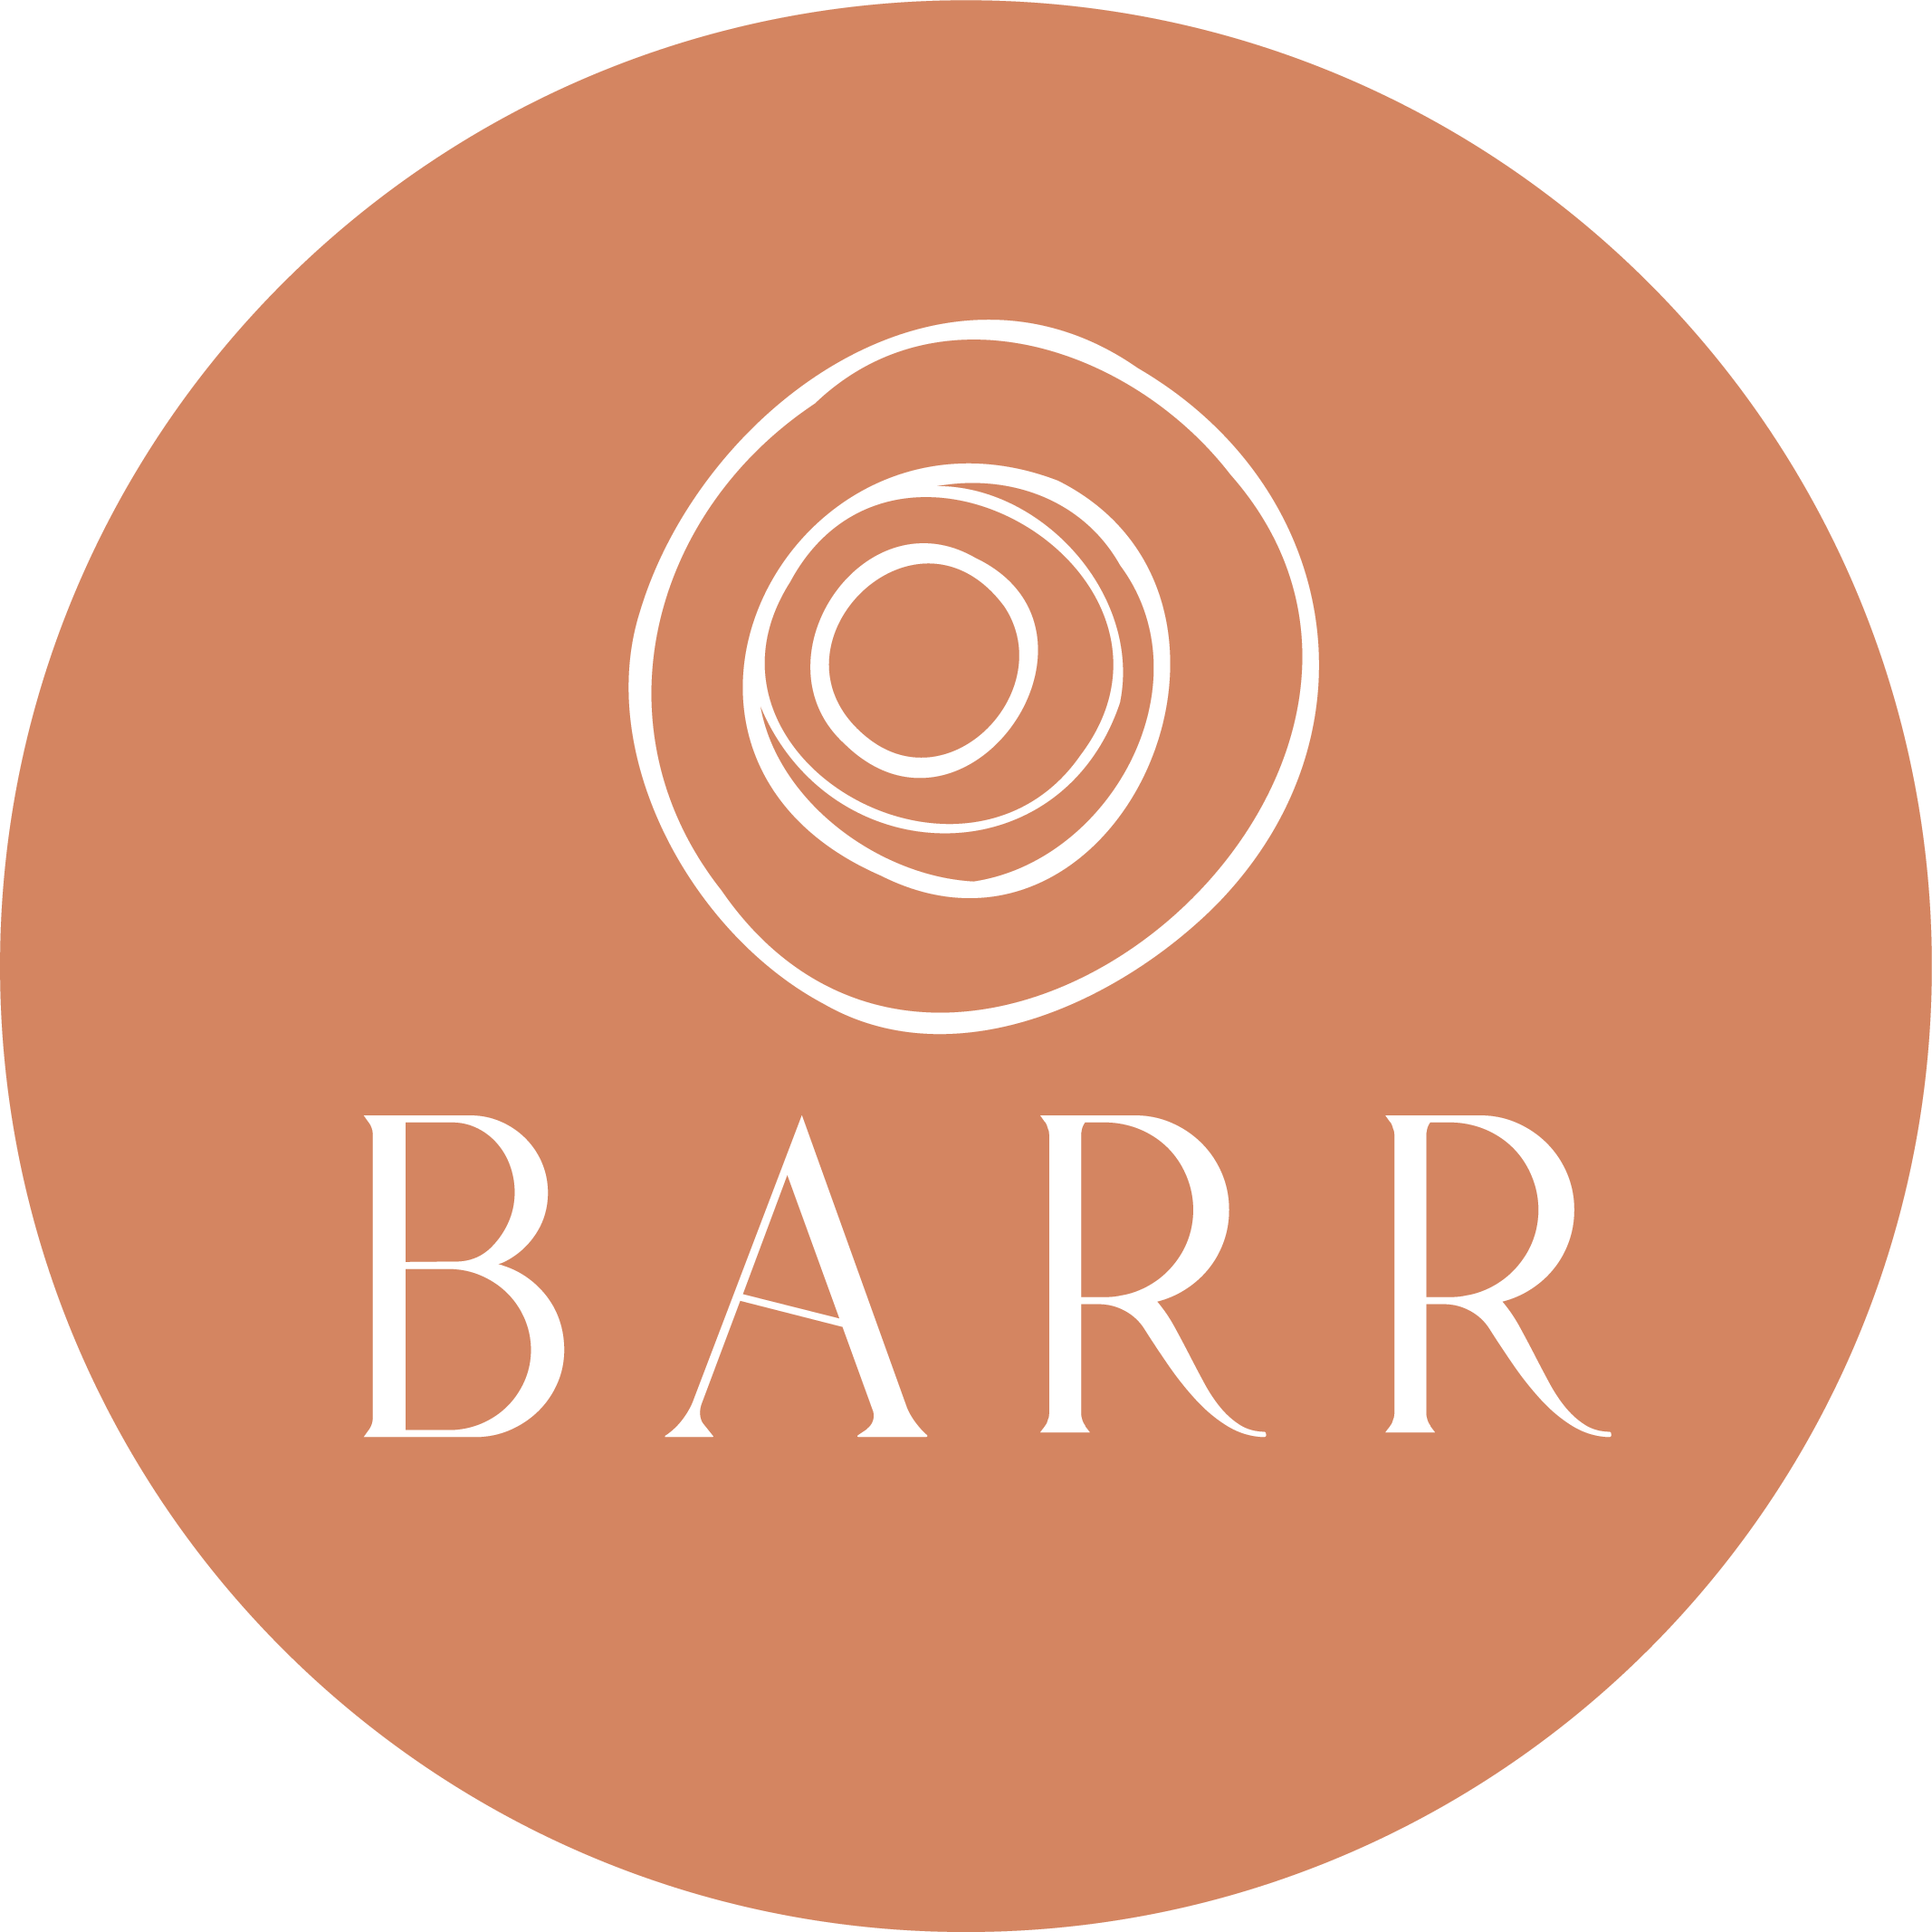 Barr-Mark-white-orange-round.png